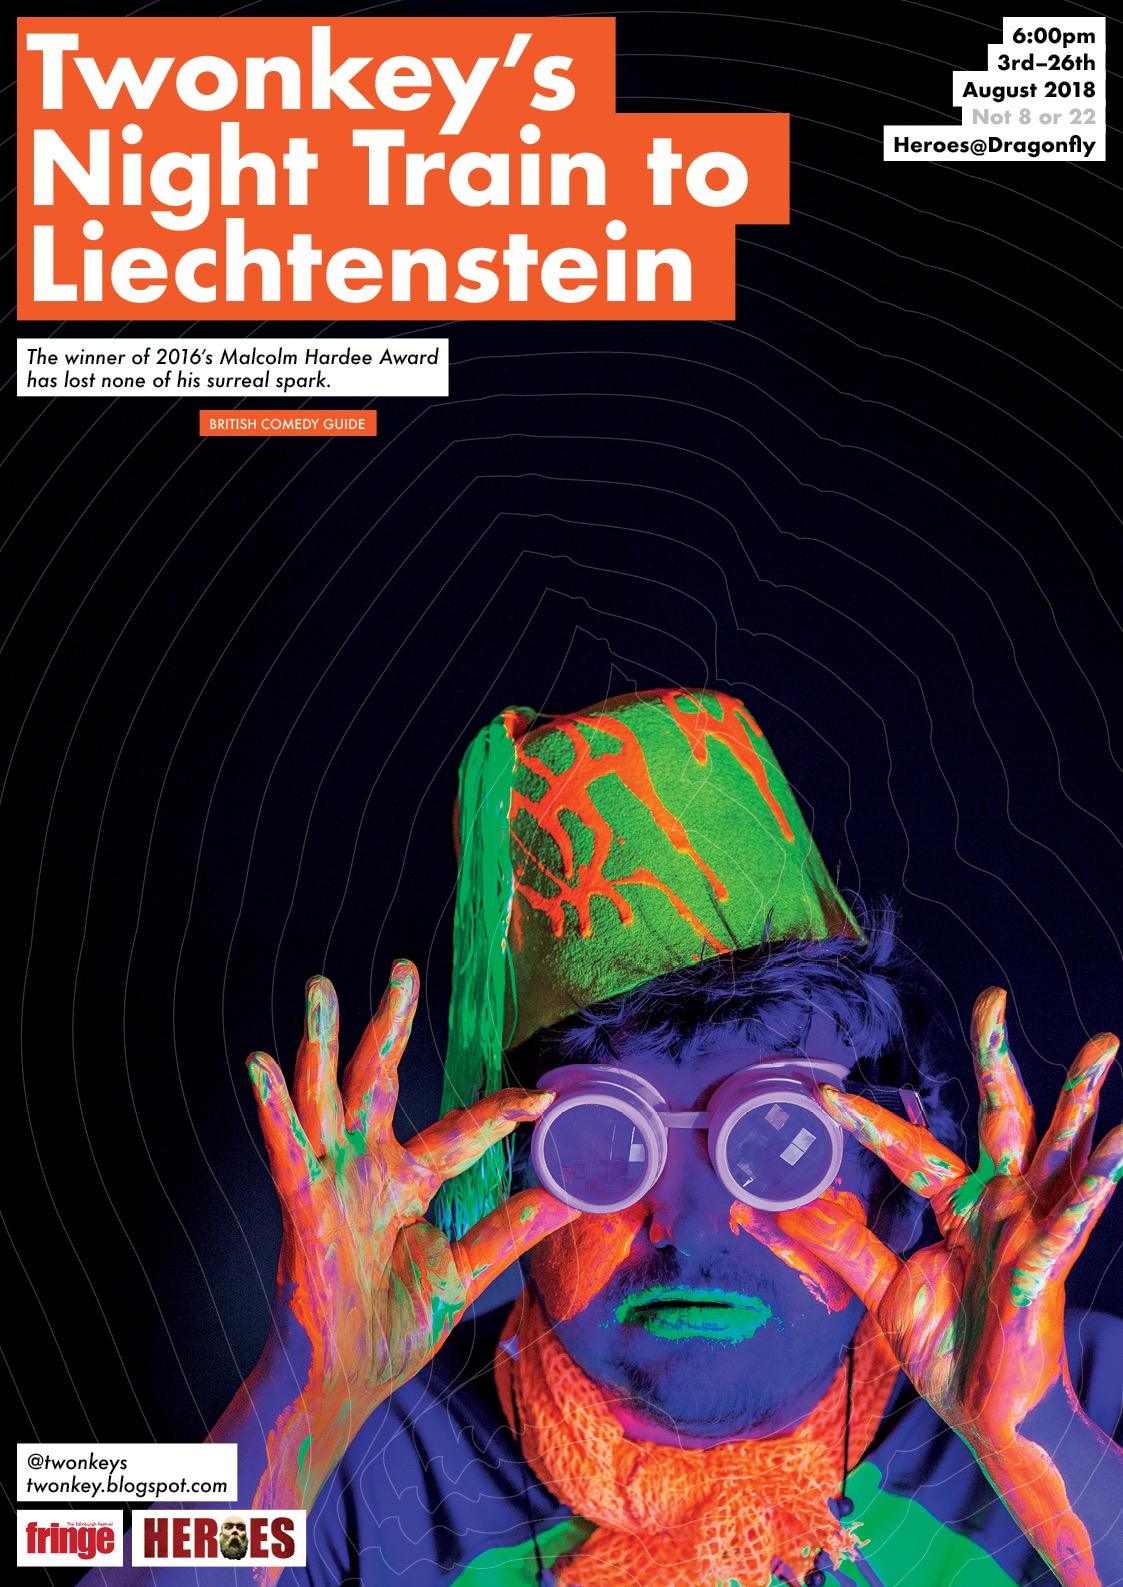 The poster for Twonkey's Night Train To Liechtenstein